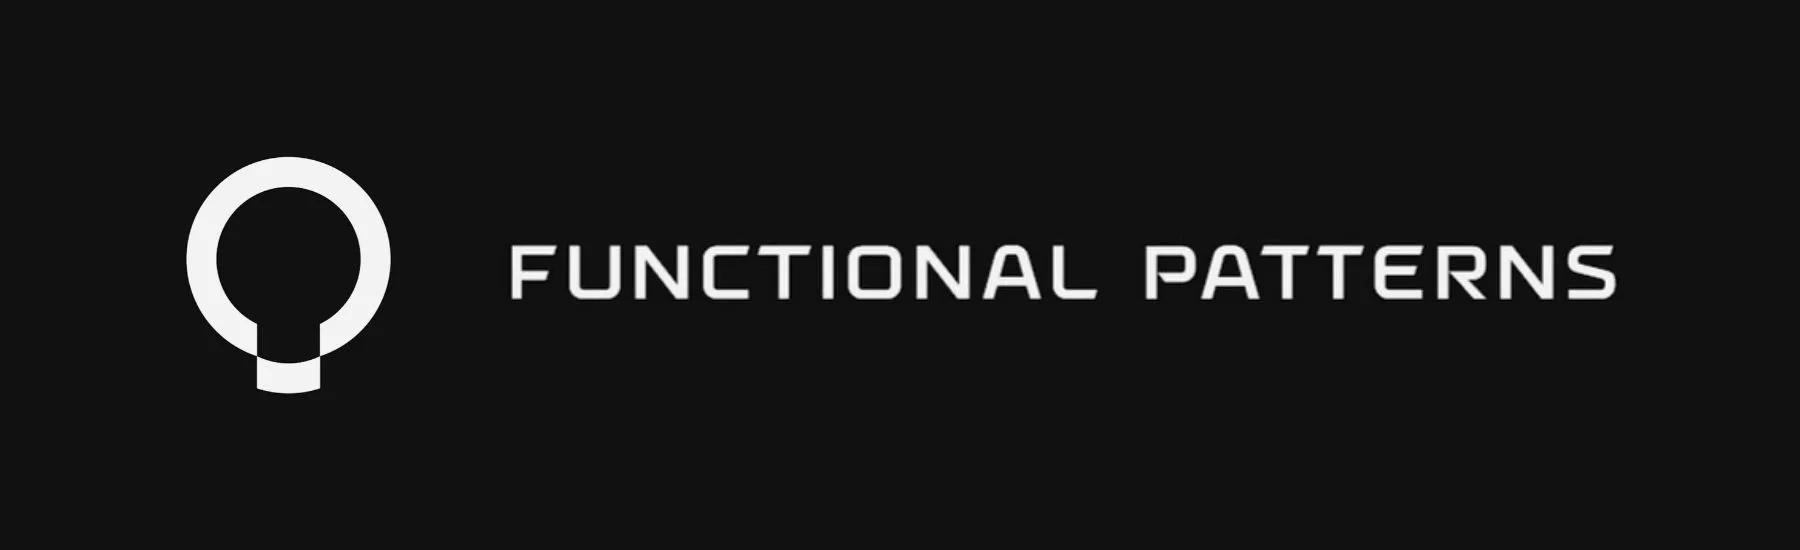 functional patterns horizontal logo